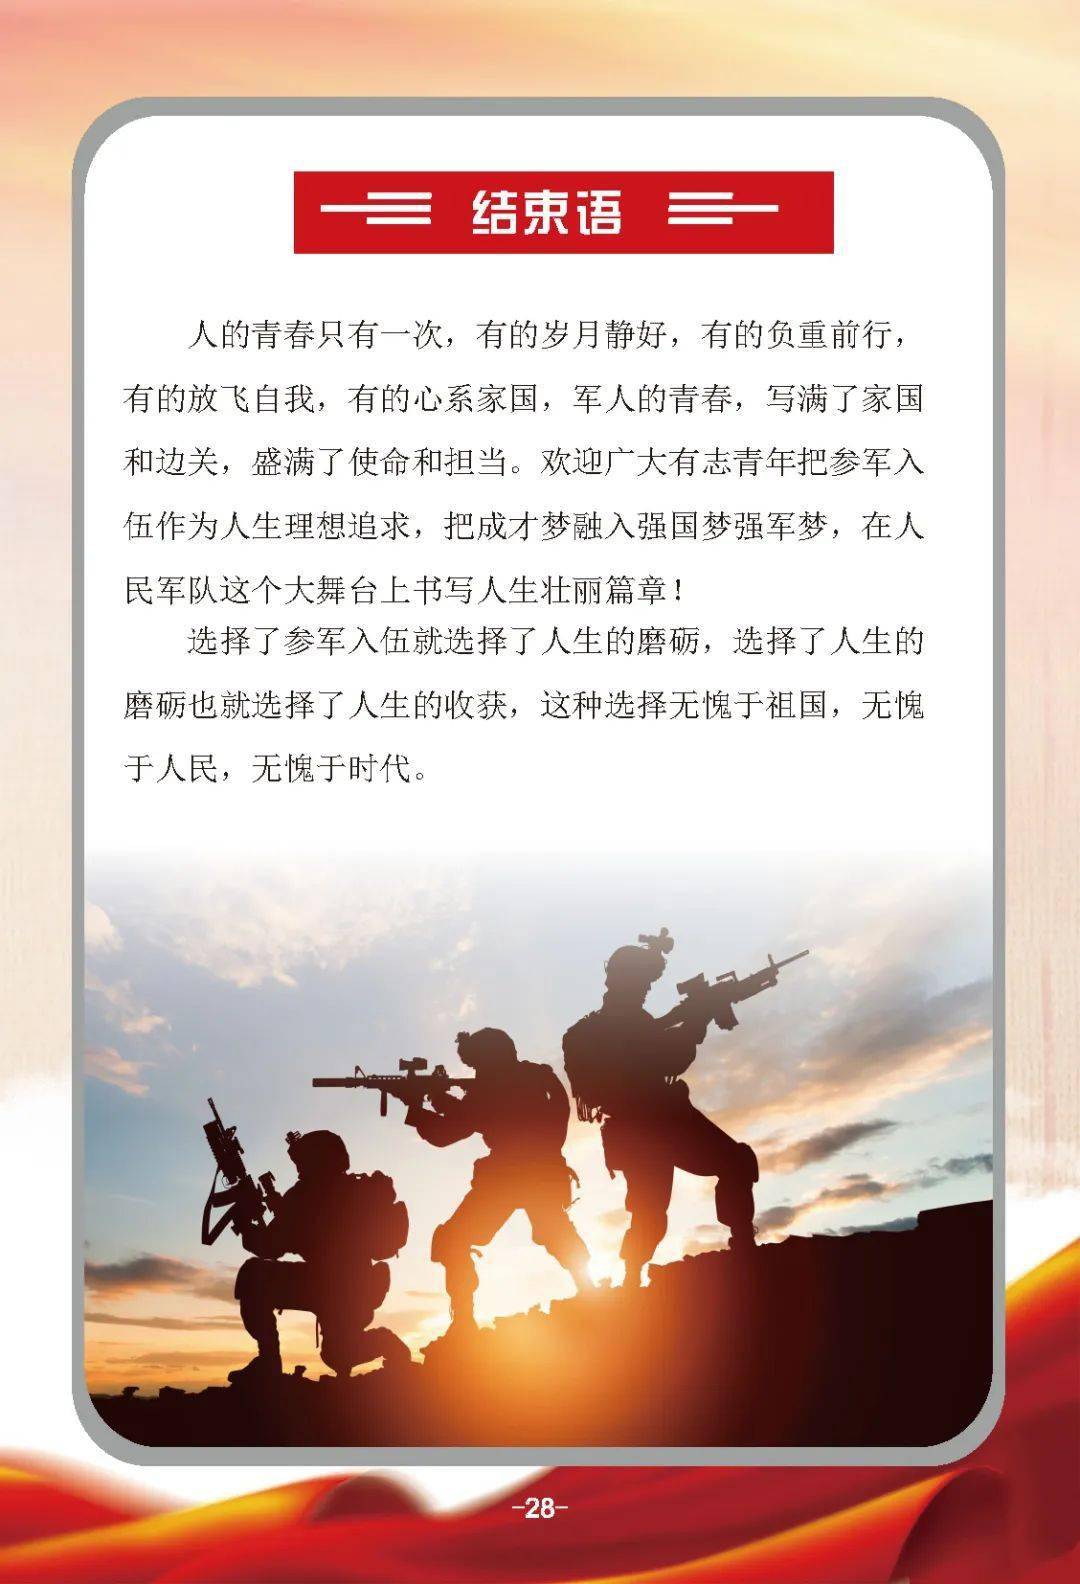 甘肃省2020年征兵宣传手册来了!